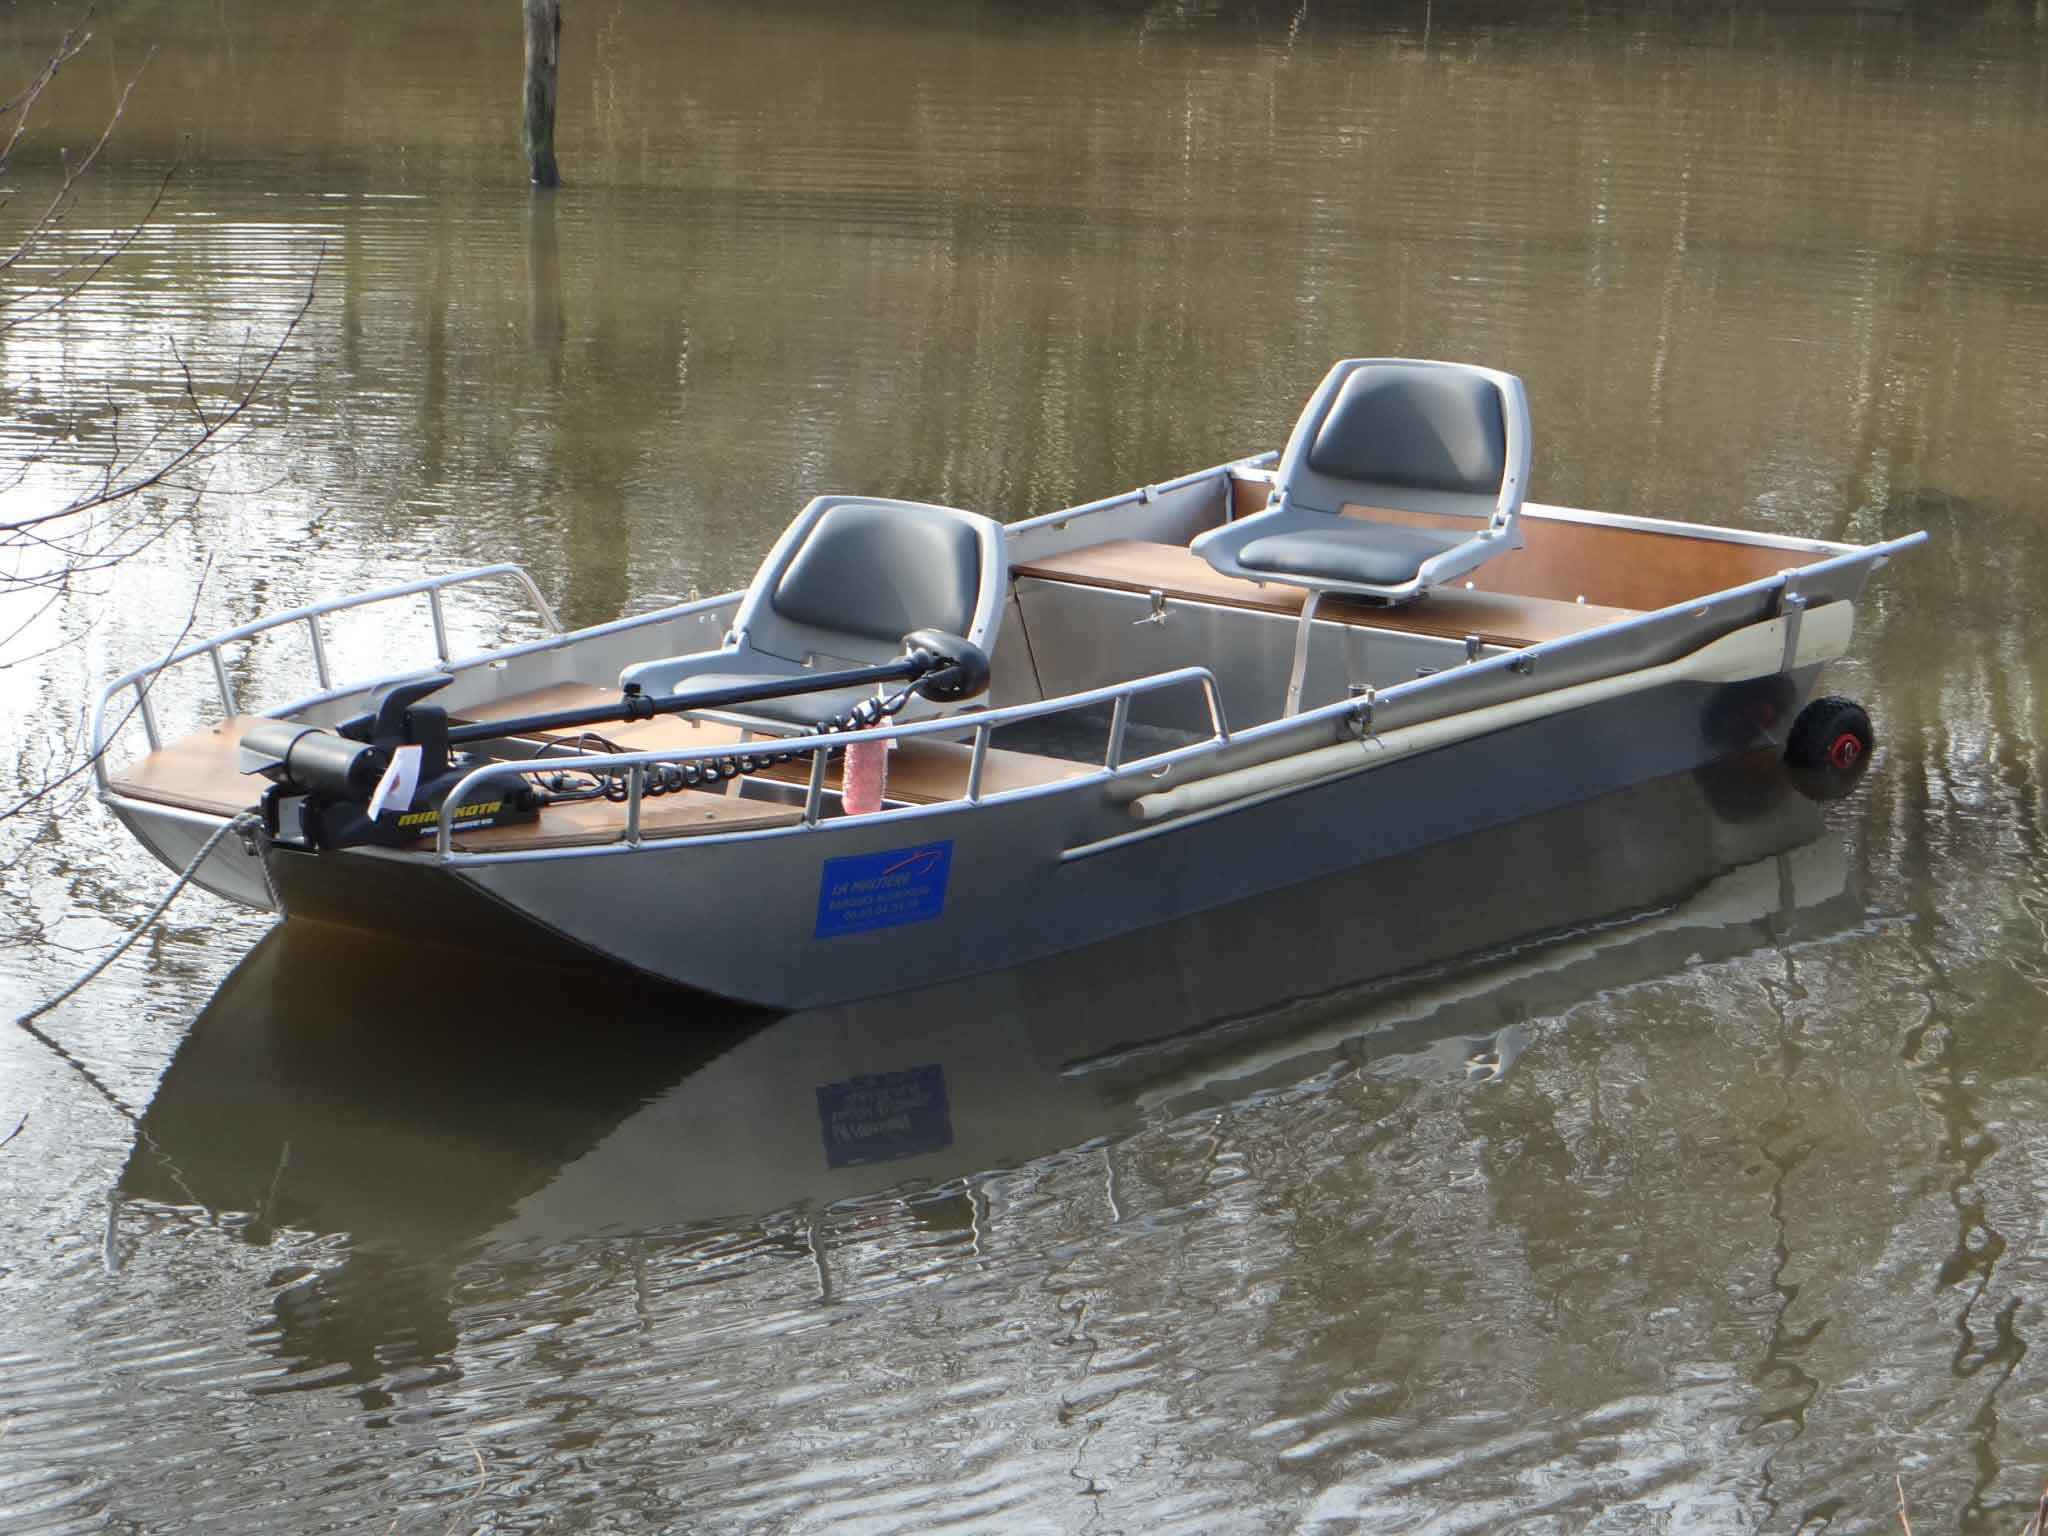 Welded aluminium boat